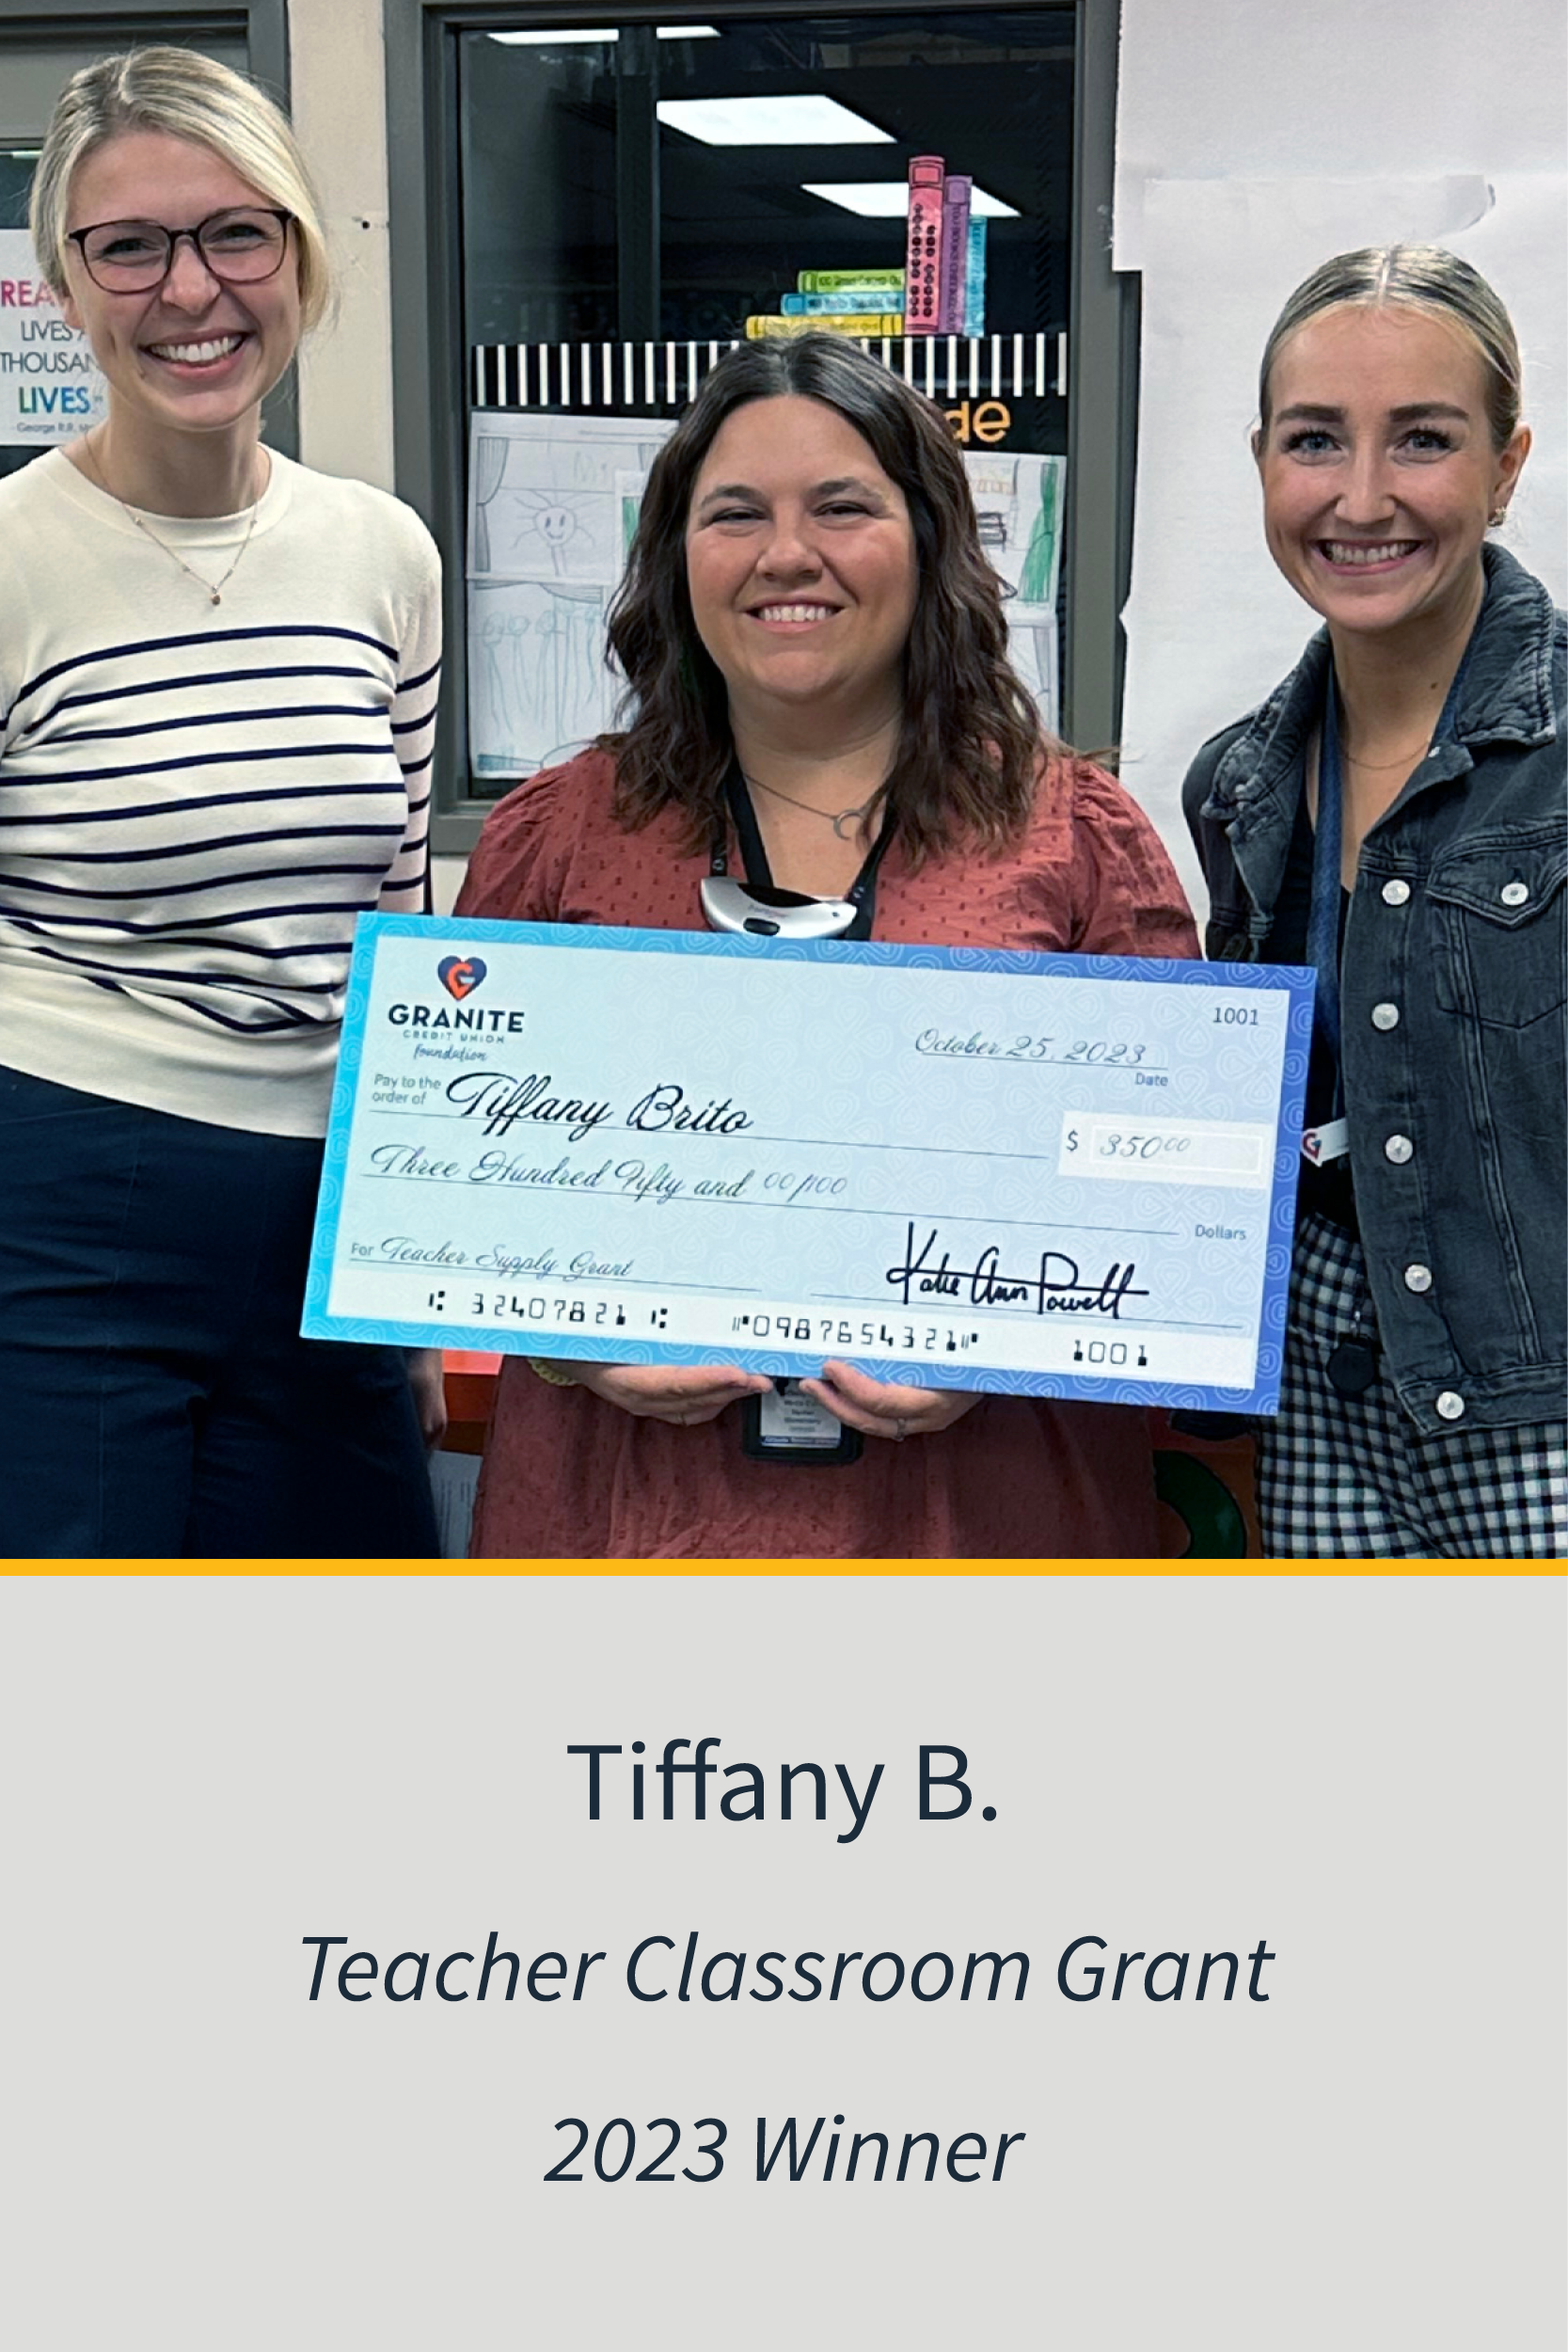 Teachers Classroom Grant 2023 Winner Tiffany B.